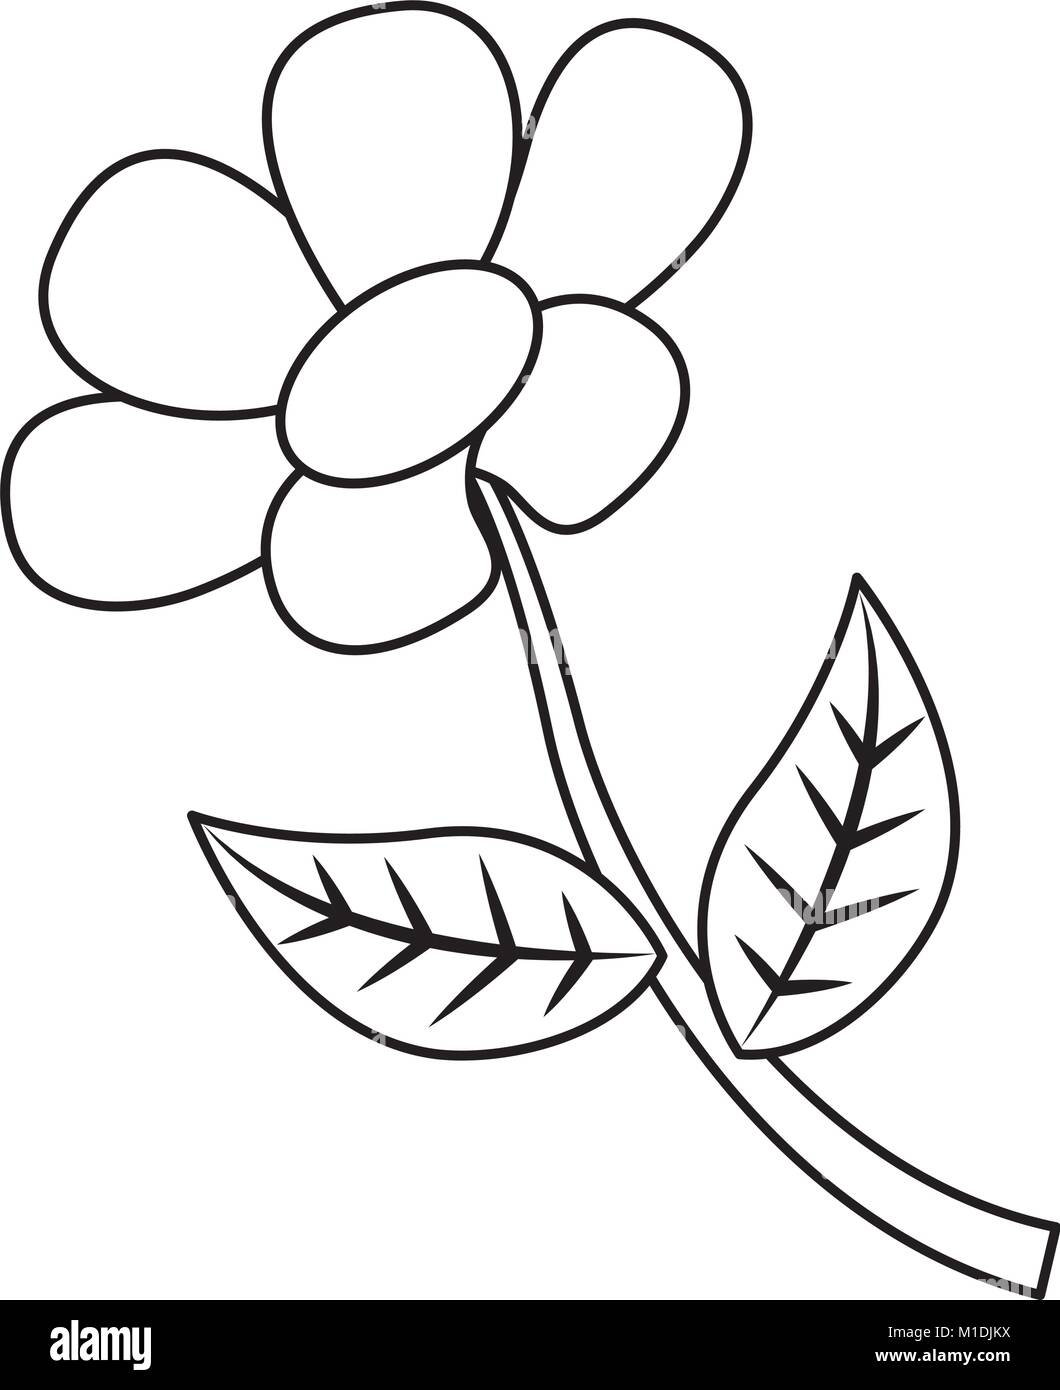 flower stem petal leaves natural spring image vector illustration ...